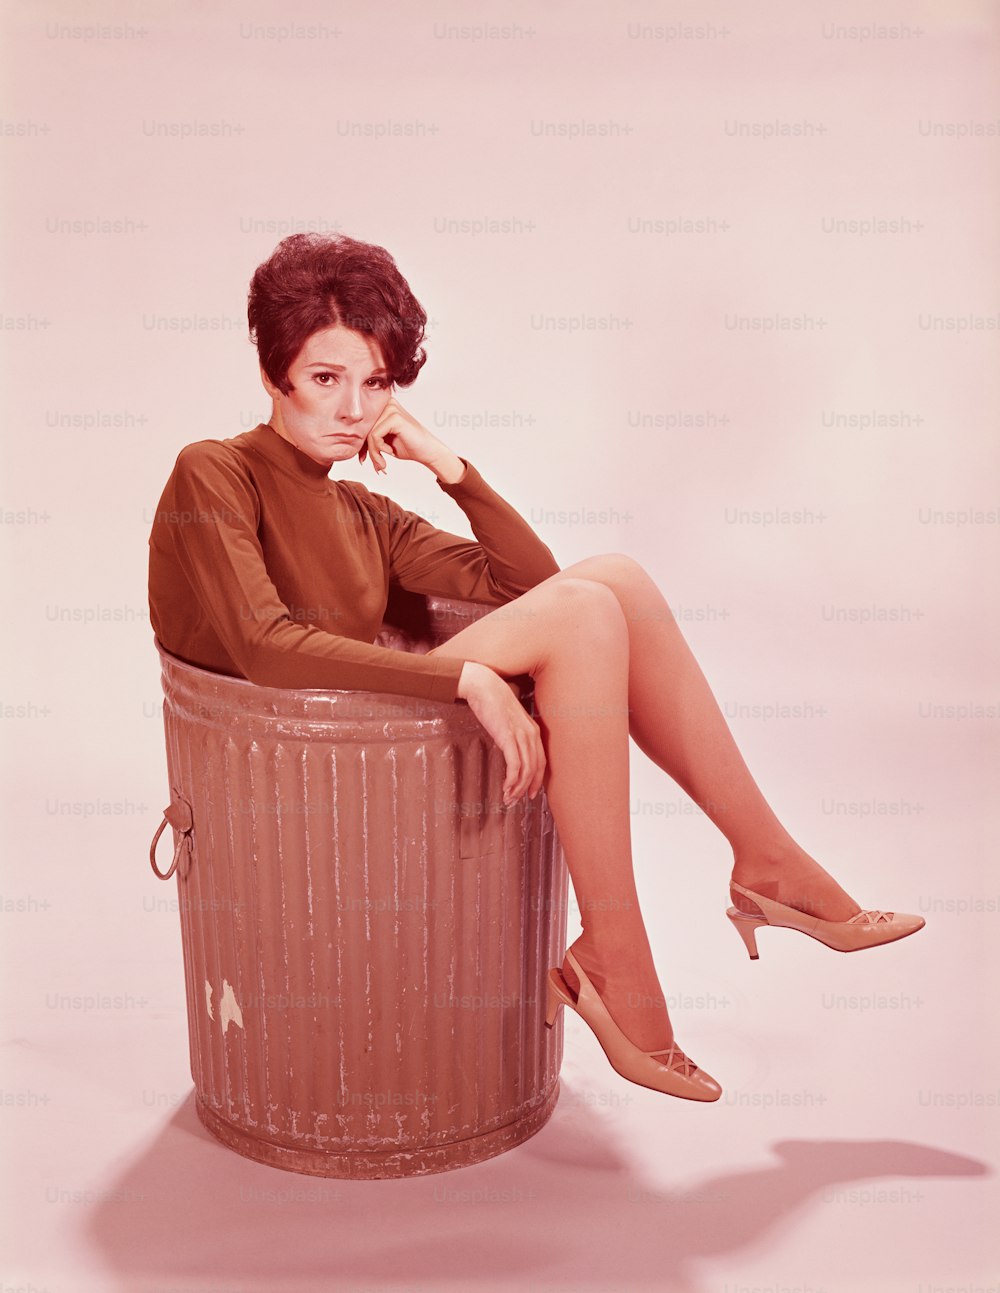 VEREINIGTE STAATEN - CIRCA 1960er Jahre: Junge Frau im Mülleimer mit heraushängenden Beinen.